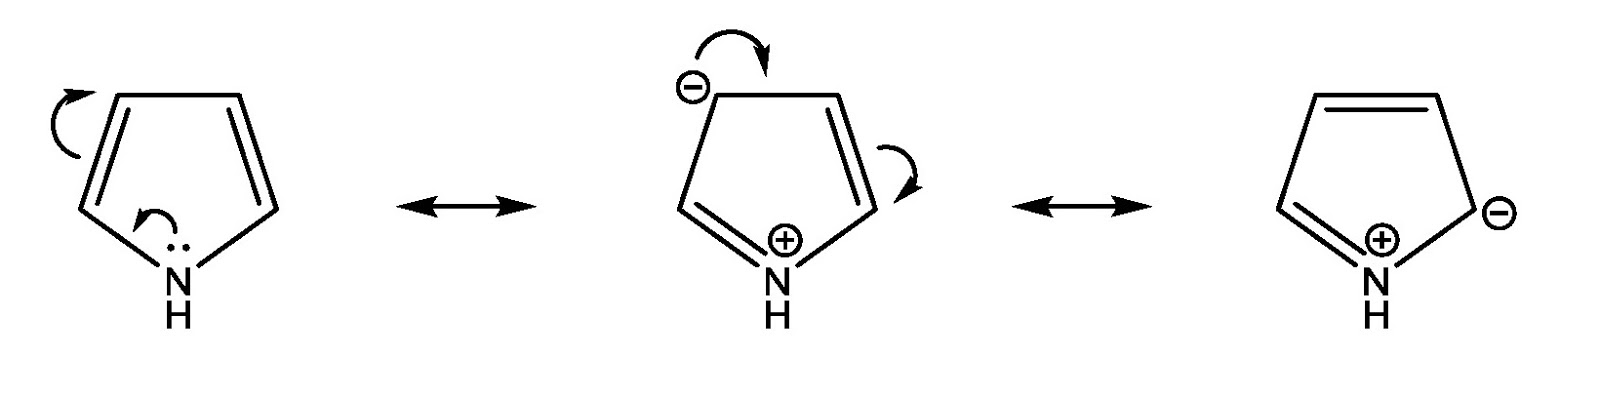 تتميز مركبات الفيوران والثيوفين والبيرول بوجود زوج من الألكترونات يسمى بالزوج الحر على الذرة الغير متجانسة ومن المتوقع ان وجود هذا الزوج من الألكترونات على ذرة النيتروجين في البيرول يُضفي على البيرول الصفة القاعدية الموجودة في الأمينات الأليفاتية ولكن عند مقارنة قاعدية البيرول (أمين ثانوي) بقاعدية الأمينات الأليفاتية نجد أنها ضعيفة جدا وذلك بسبب أشتراك زوج الألكترونات الحر على ذرة النتروجين في تكوين الصفة الأروماتية  (الرنين الألكتروني) للبيرول مما يجعلها مشغولة عن أستقبال بروتونات الأحماض